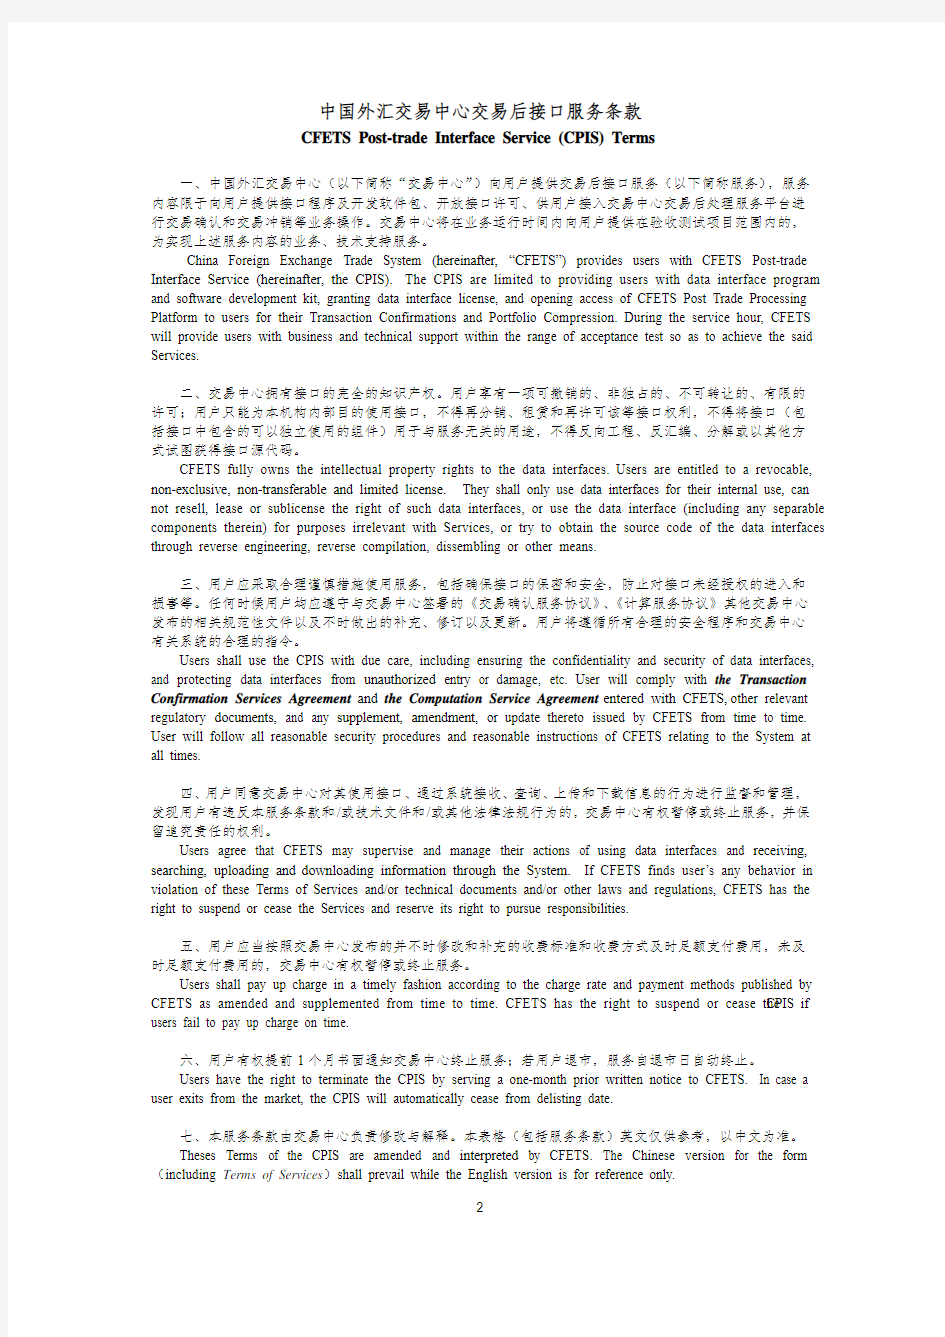 中国外汇交易中心交易后接口服务(上线)申请表